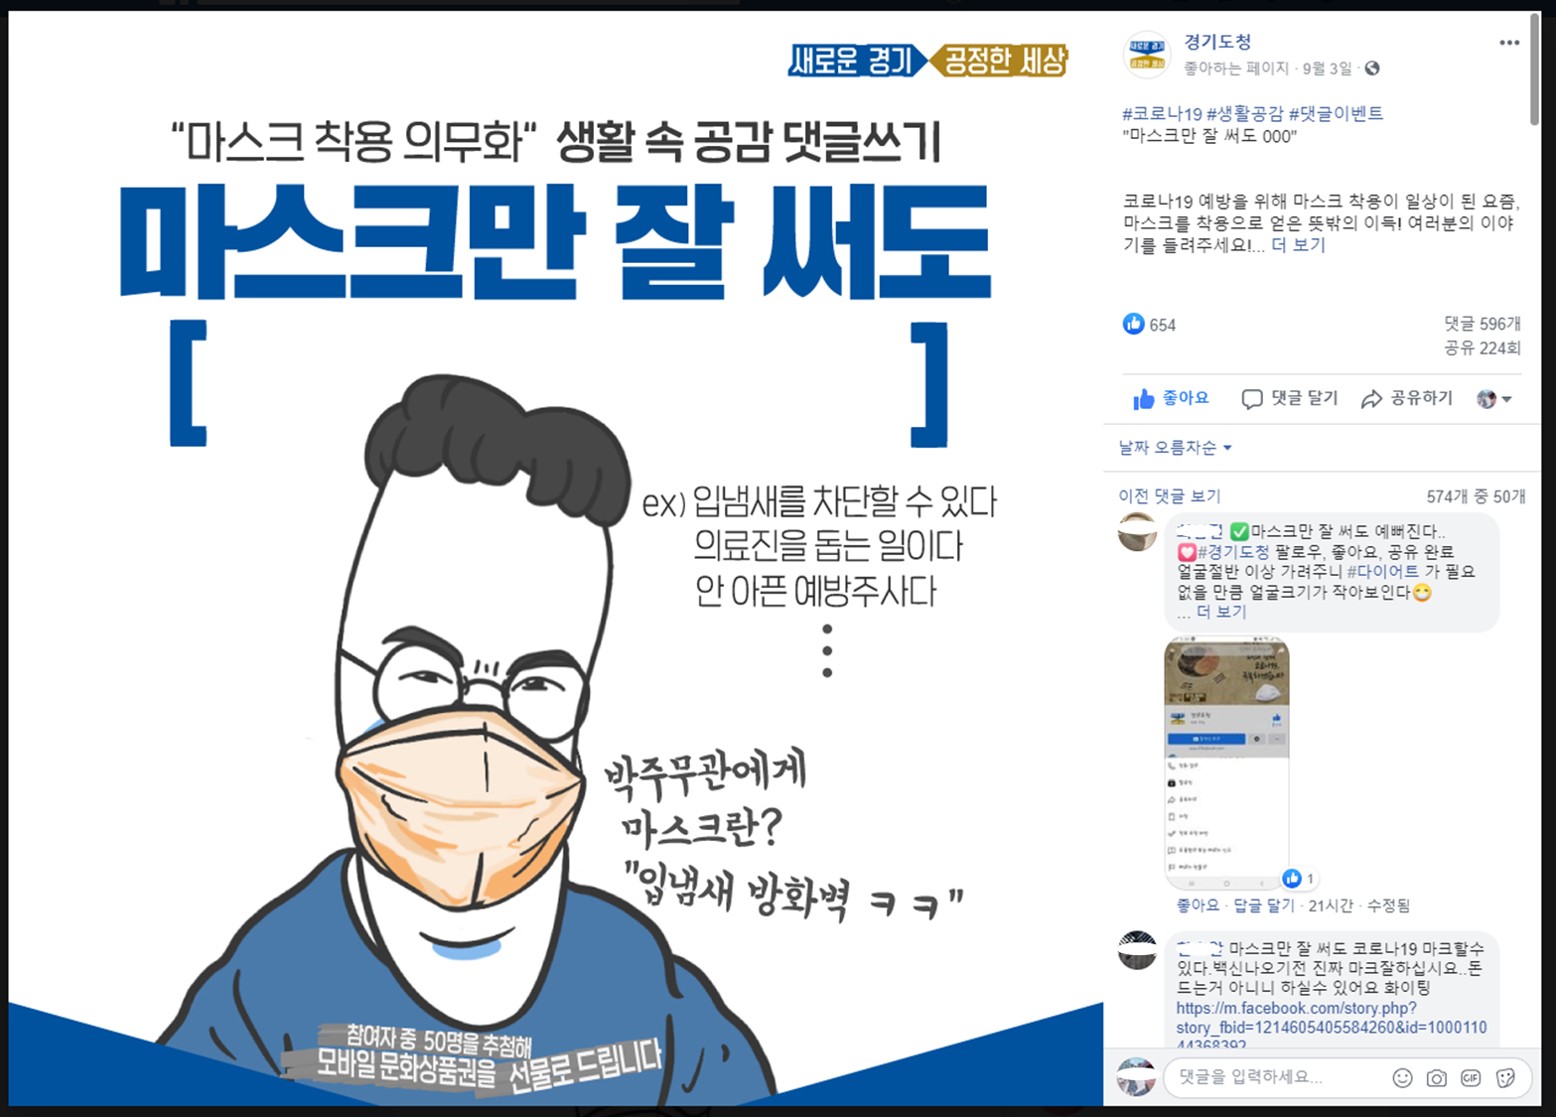 ‘마스크만 잘 써도, ○○○ 캠페인’ 경기도 SNS 이벤트, 재치 댓글 줄이어